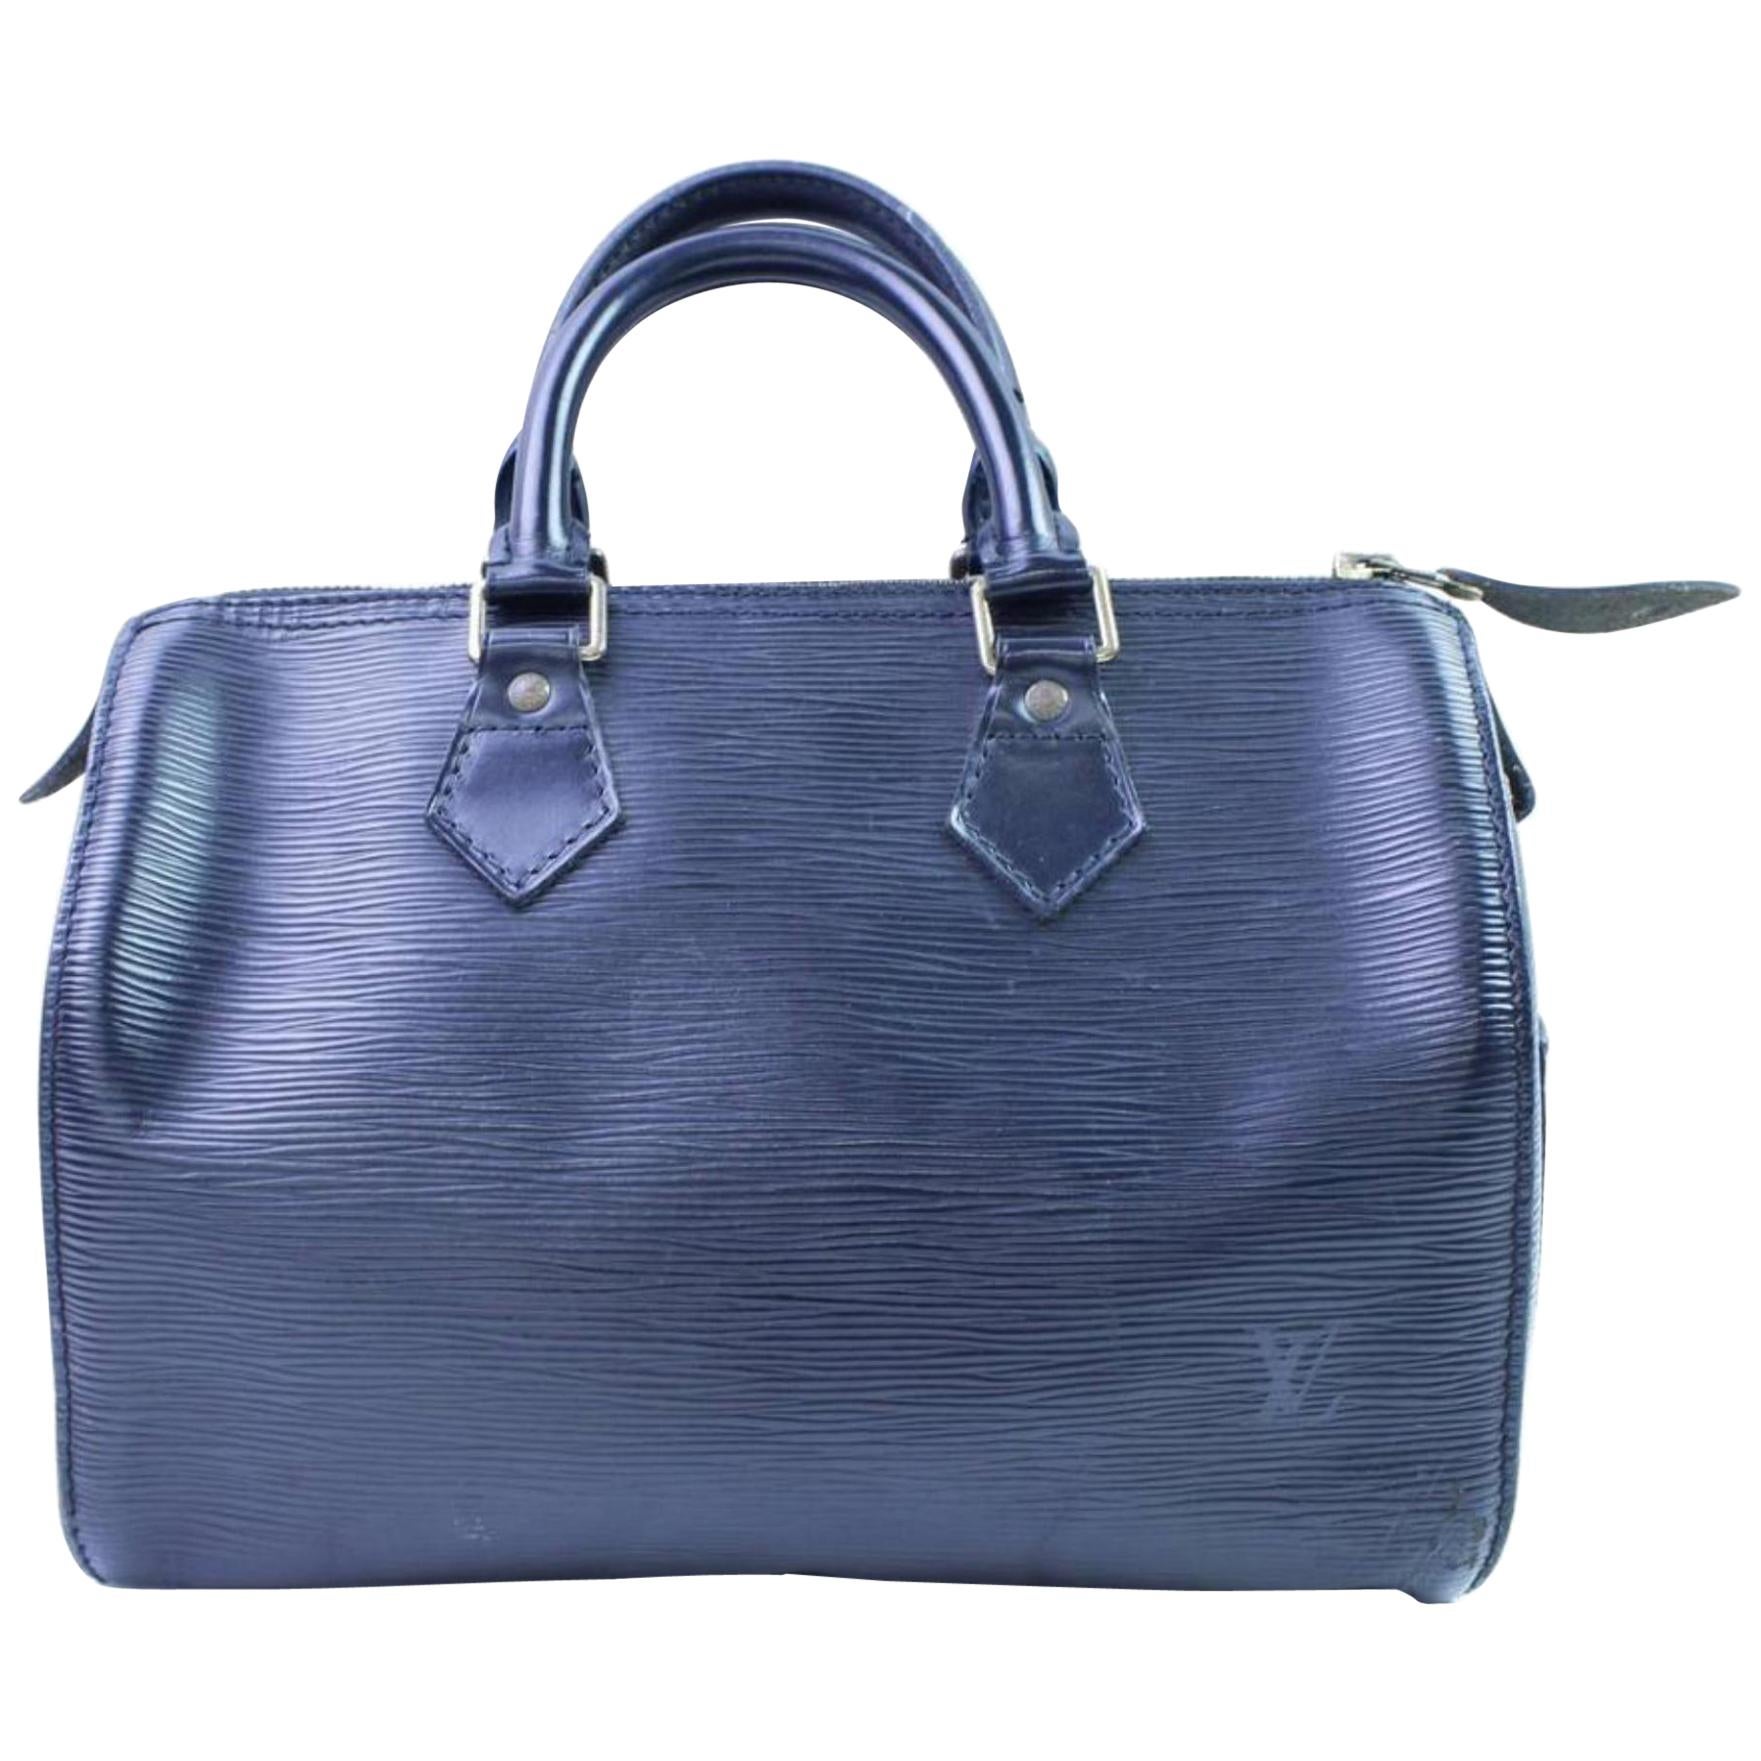 Louis Vuitton Speedy Black Epi 25 866634 Blue Leather Satchel For Sale